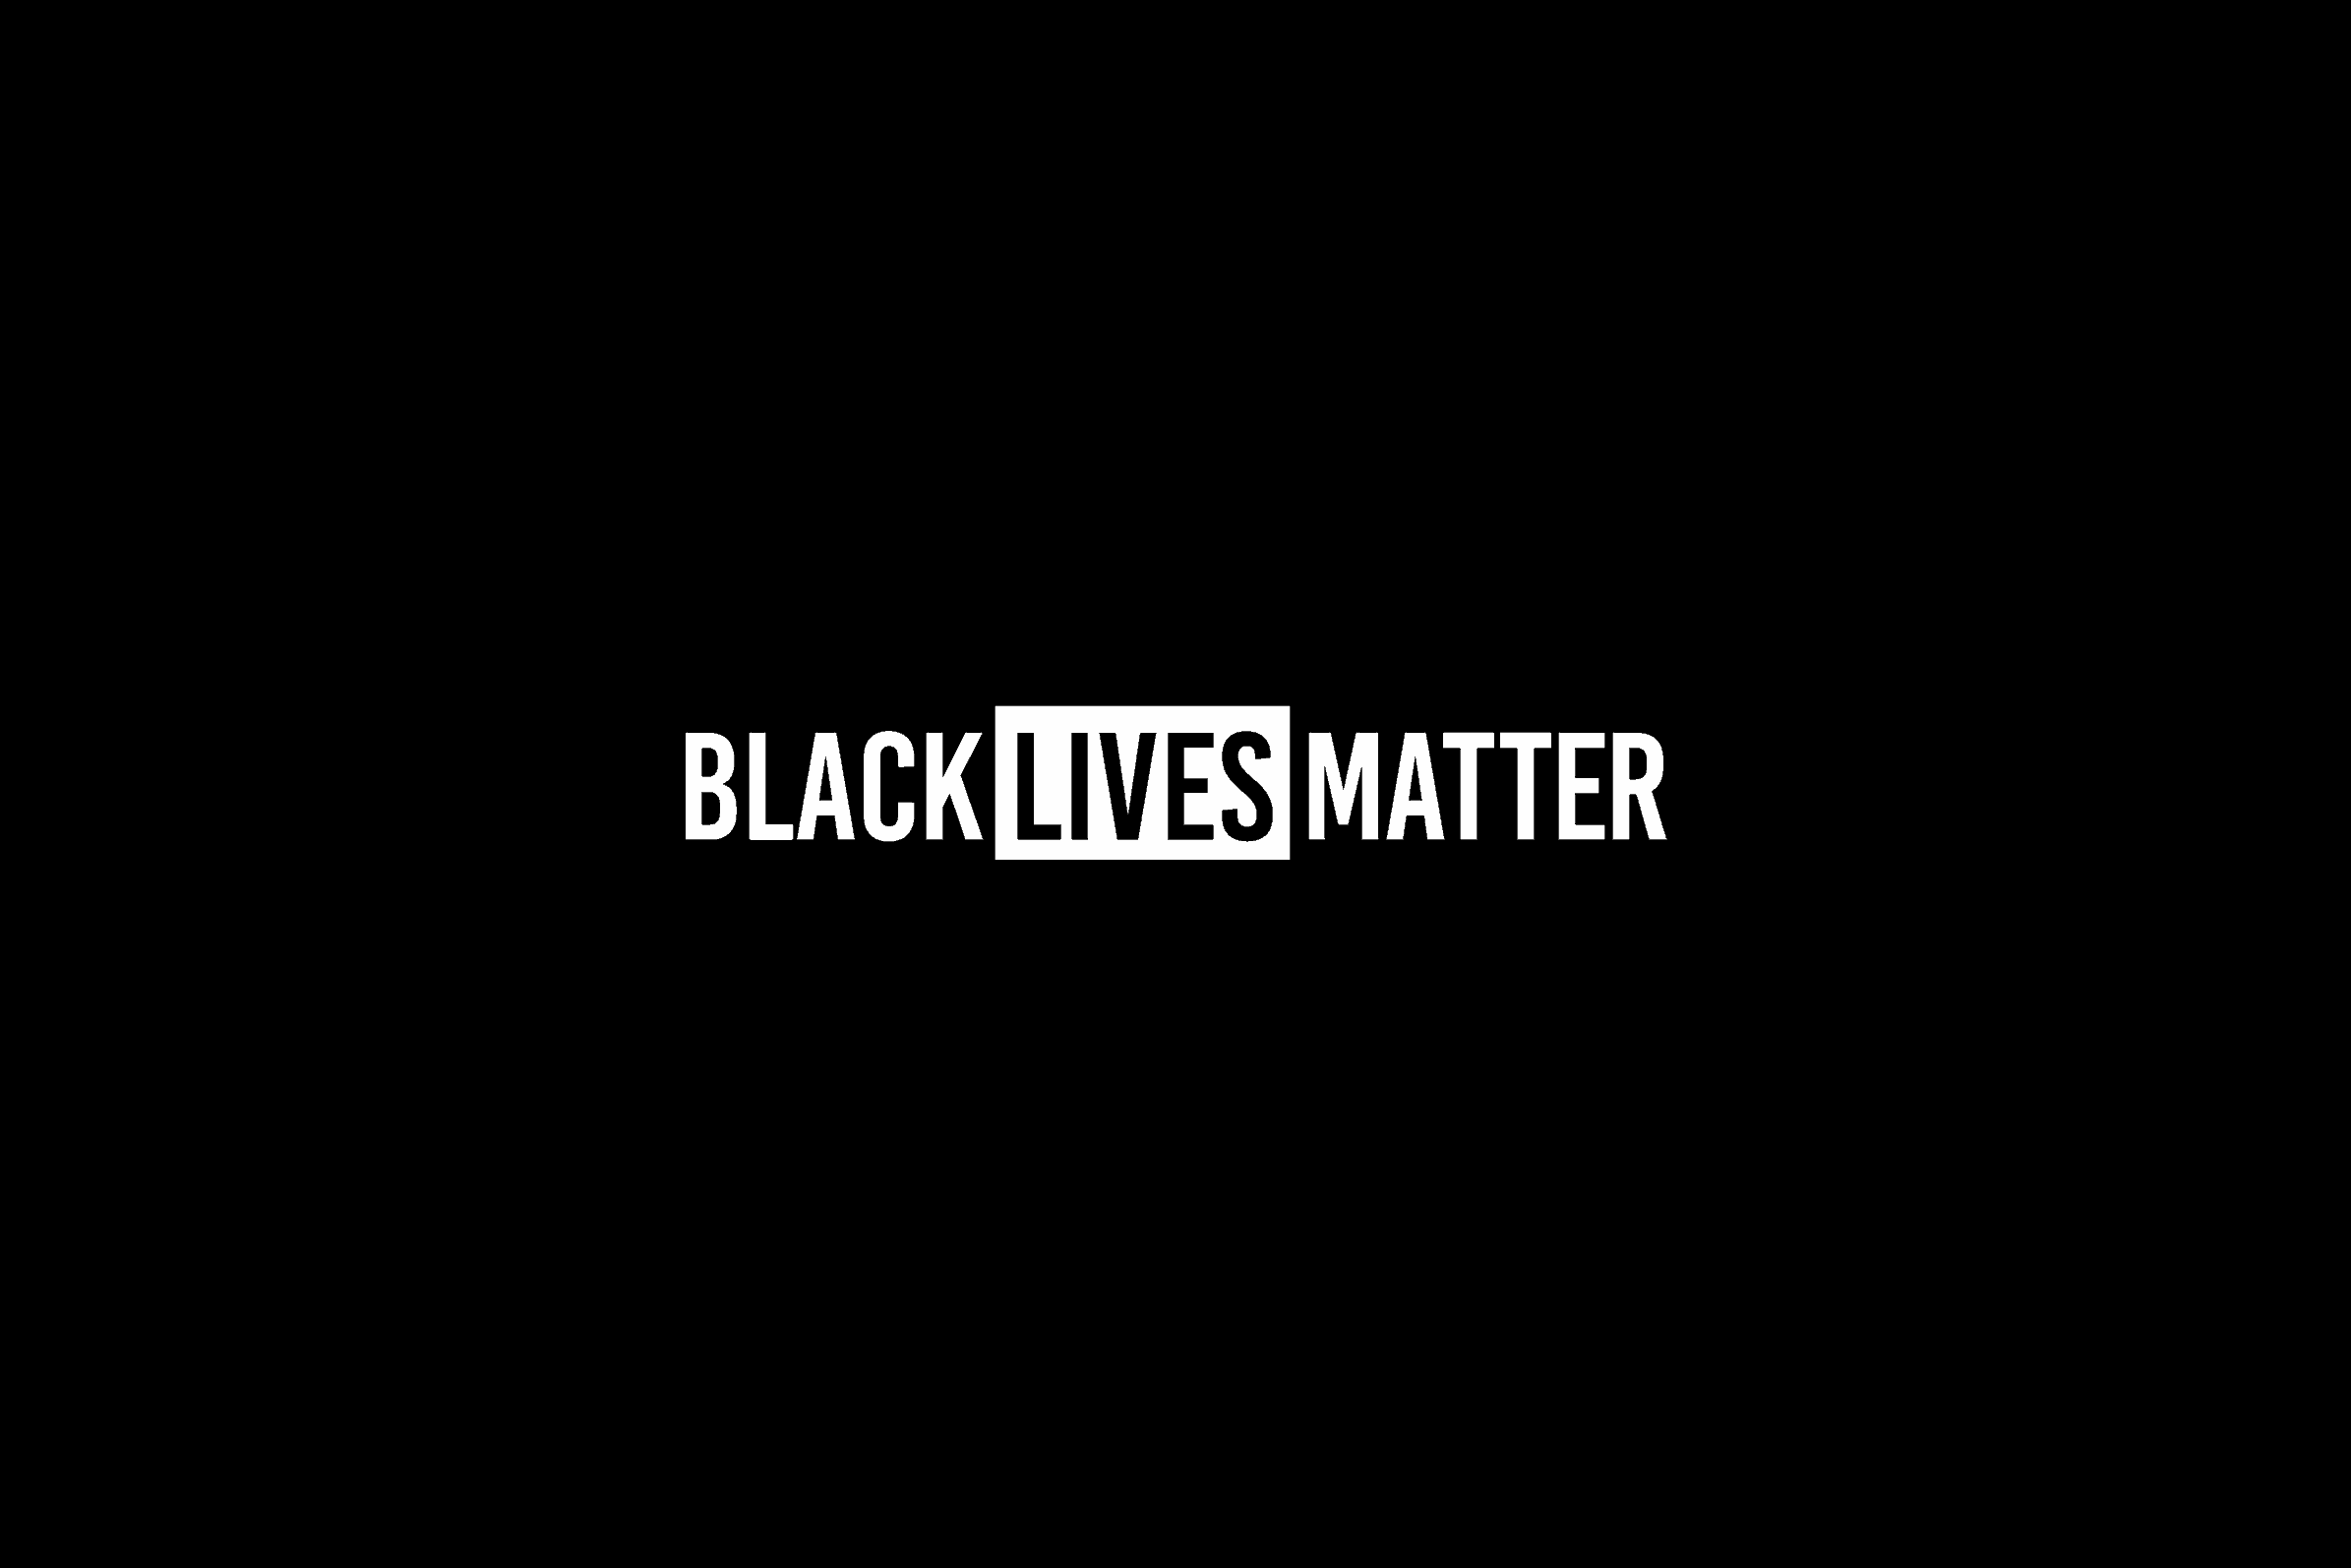 black lives matter text